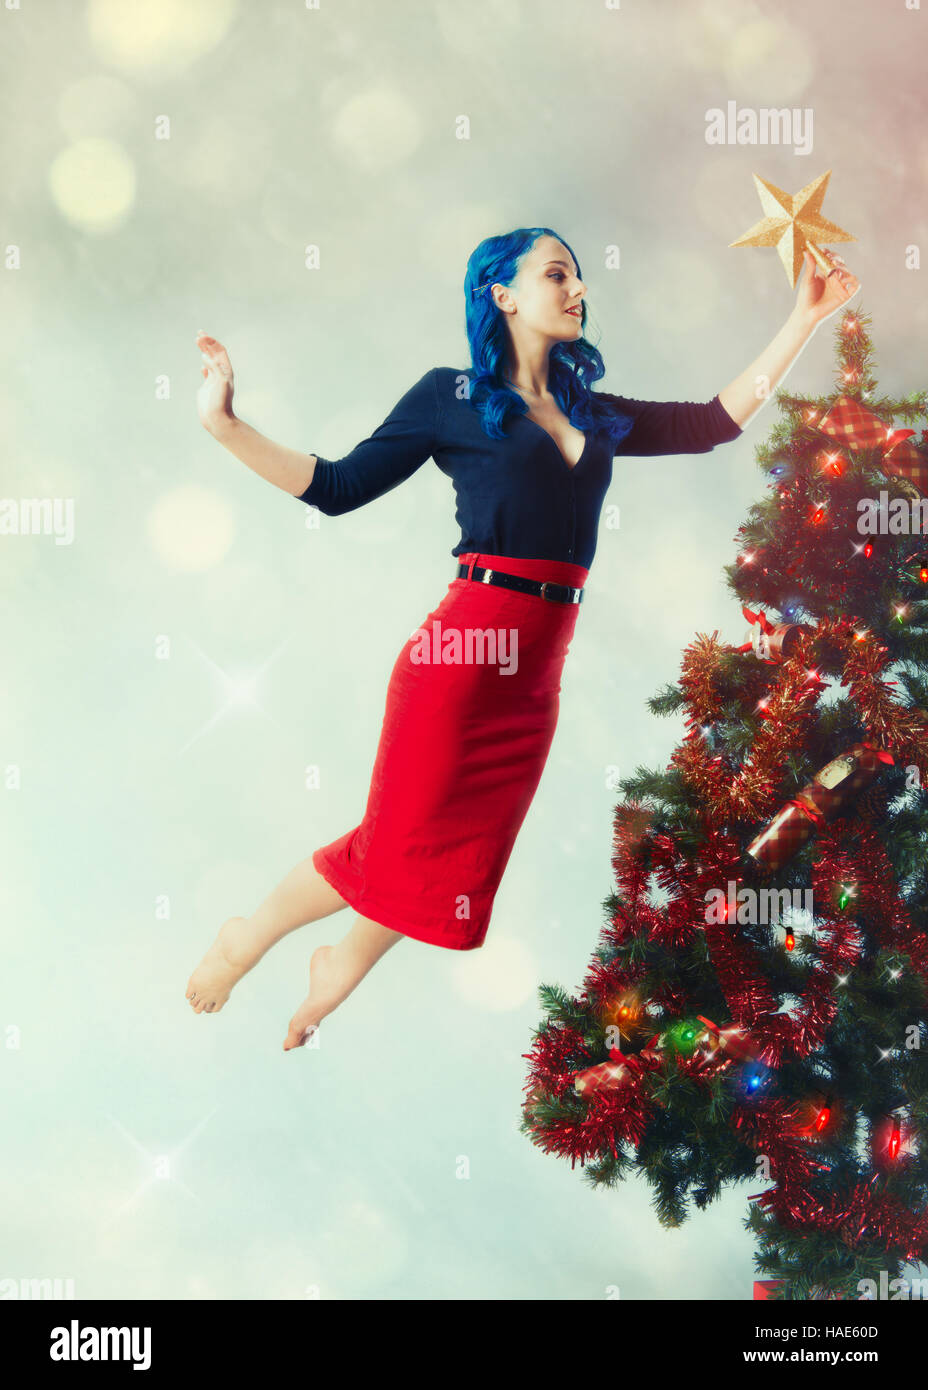 Frau schweben, indem der Star auf einen Weihnachtsbaum Stockfoto